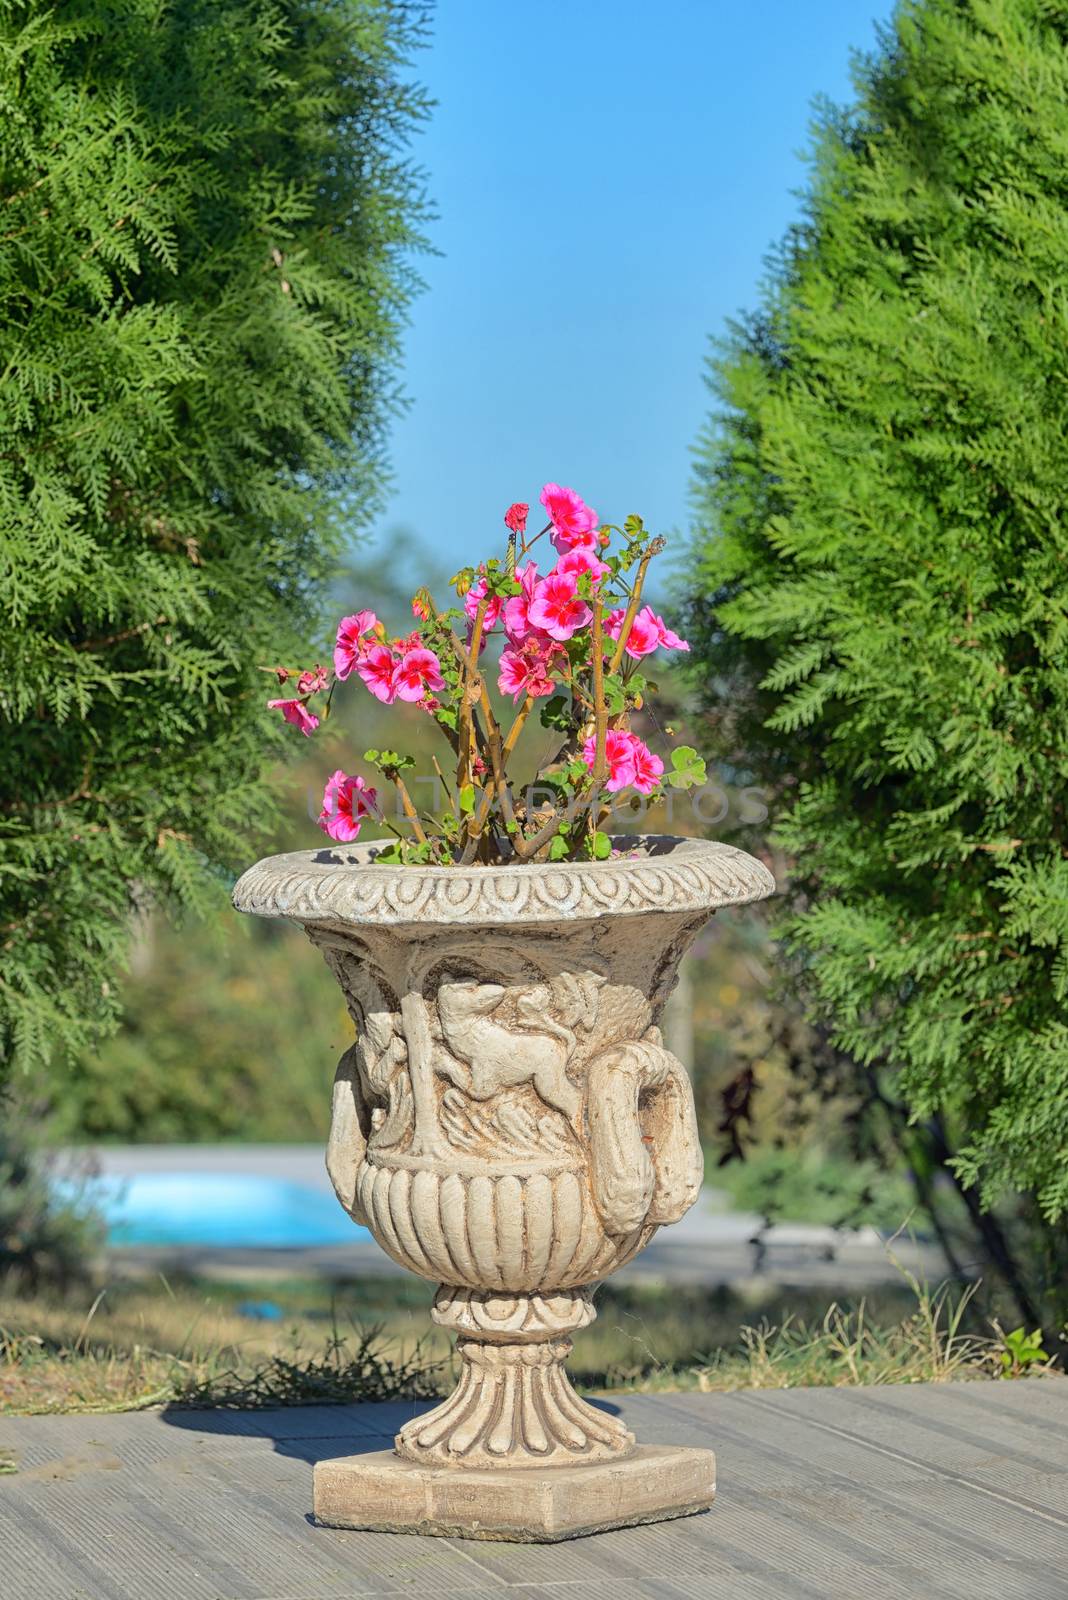 Red geranium flowers in elegant ceramic pot